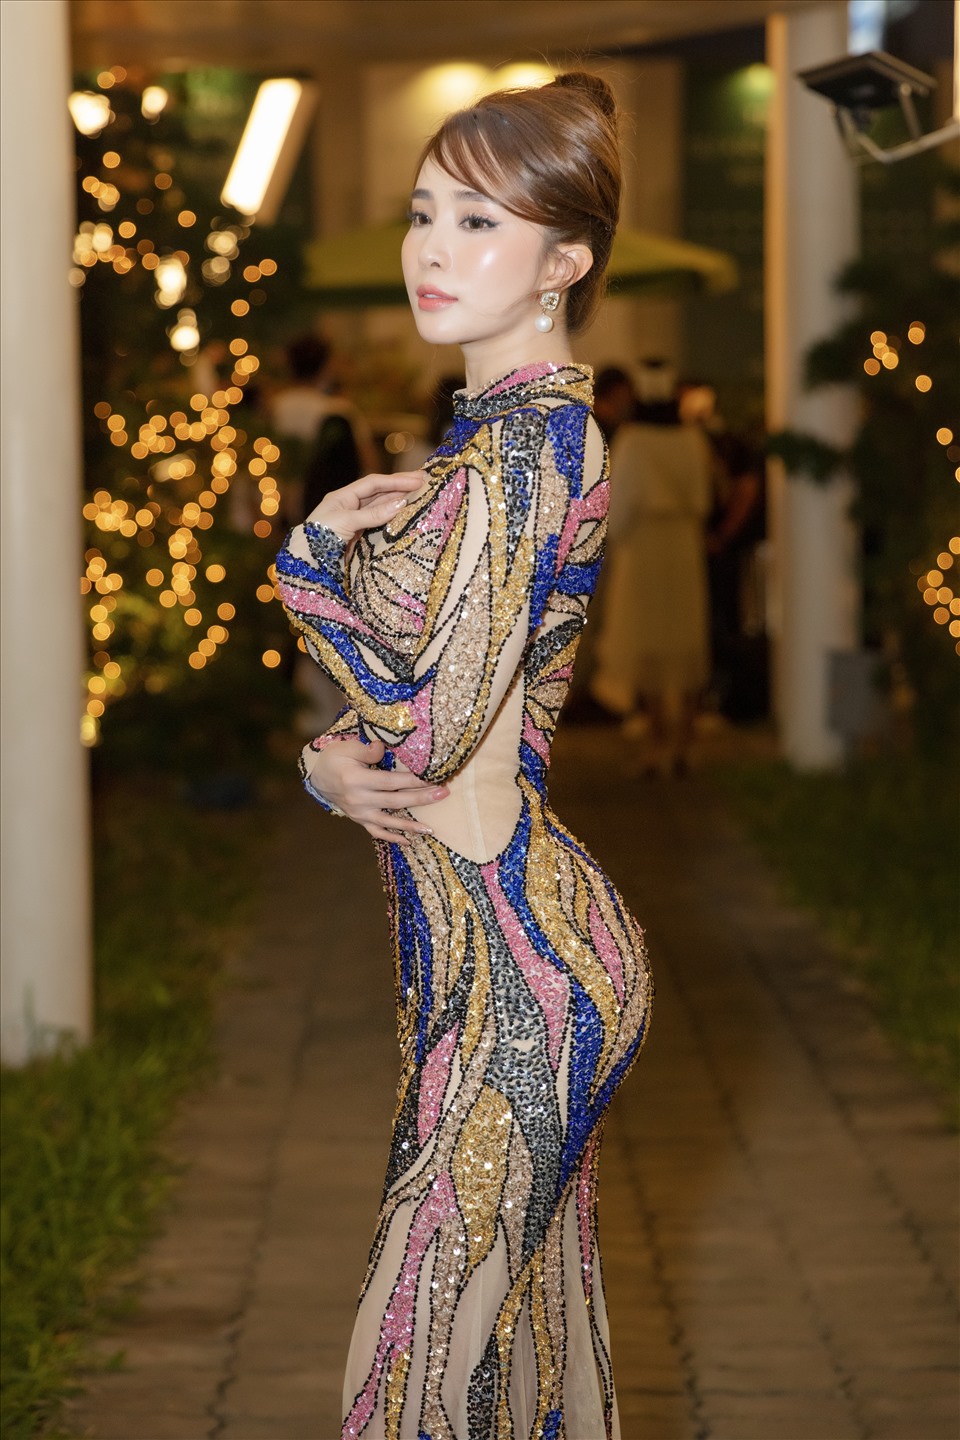 Quỳnh Nga cho biết, cô chọn trang phục này để mặc dự sự kiện vì cô rất “nể” sự cầu kỳ, công phu đến từng chi tiết nhỏ của thiết kế, đặc biệt là phần đính kết hết sức tinh tế.